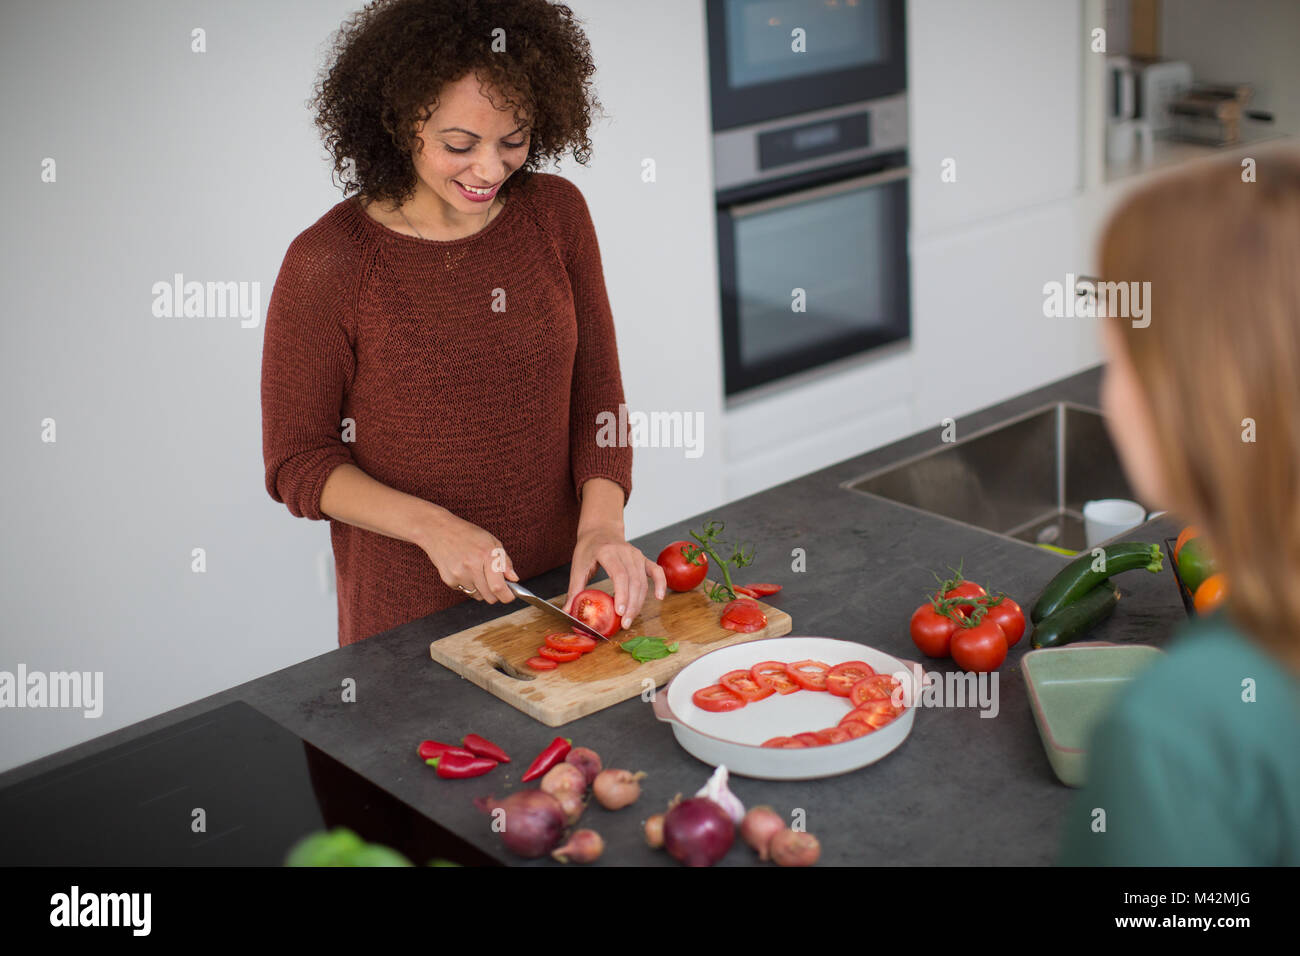 Afrikanische amerikanische weibliche Vorbereitung Mahlzeit für einen Freund Stockfoto